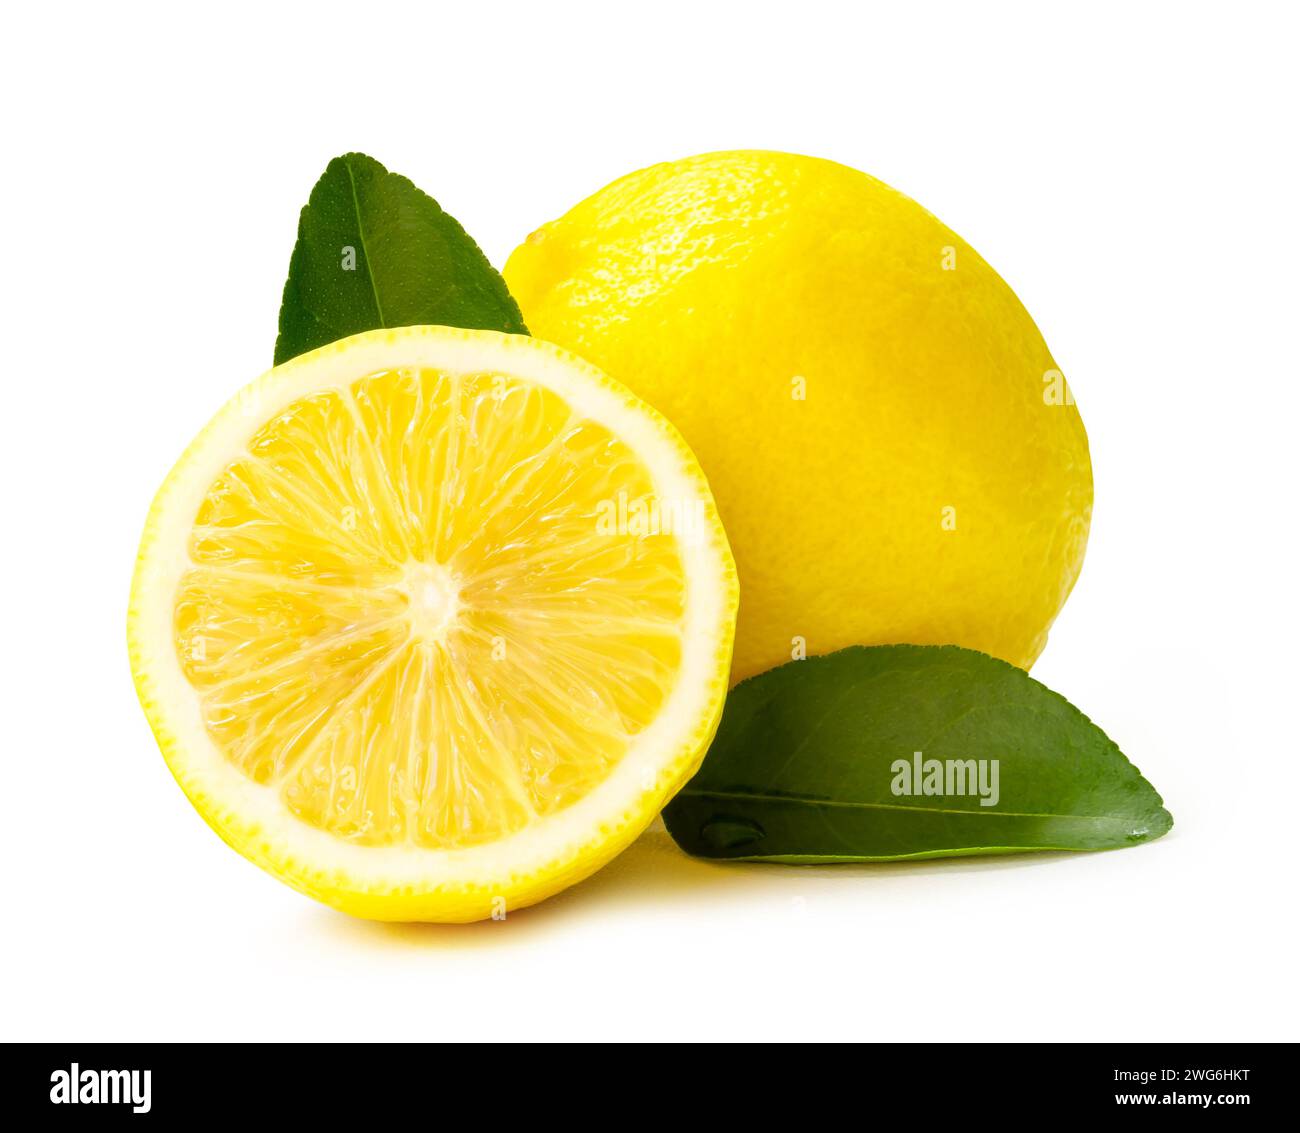 La vista frontale e il primo piano di frutta fresca al limone giallo con metà e foglie sono isolati su sfondo bianco con percorso di ritaglio. Foto Stock